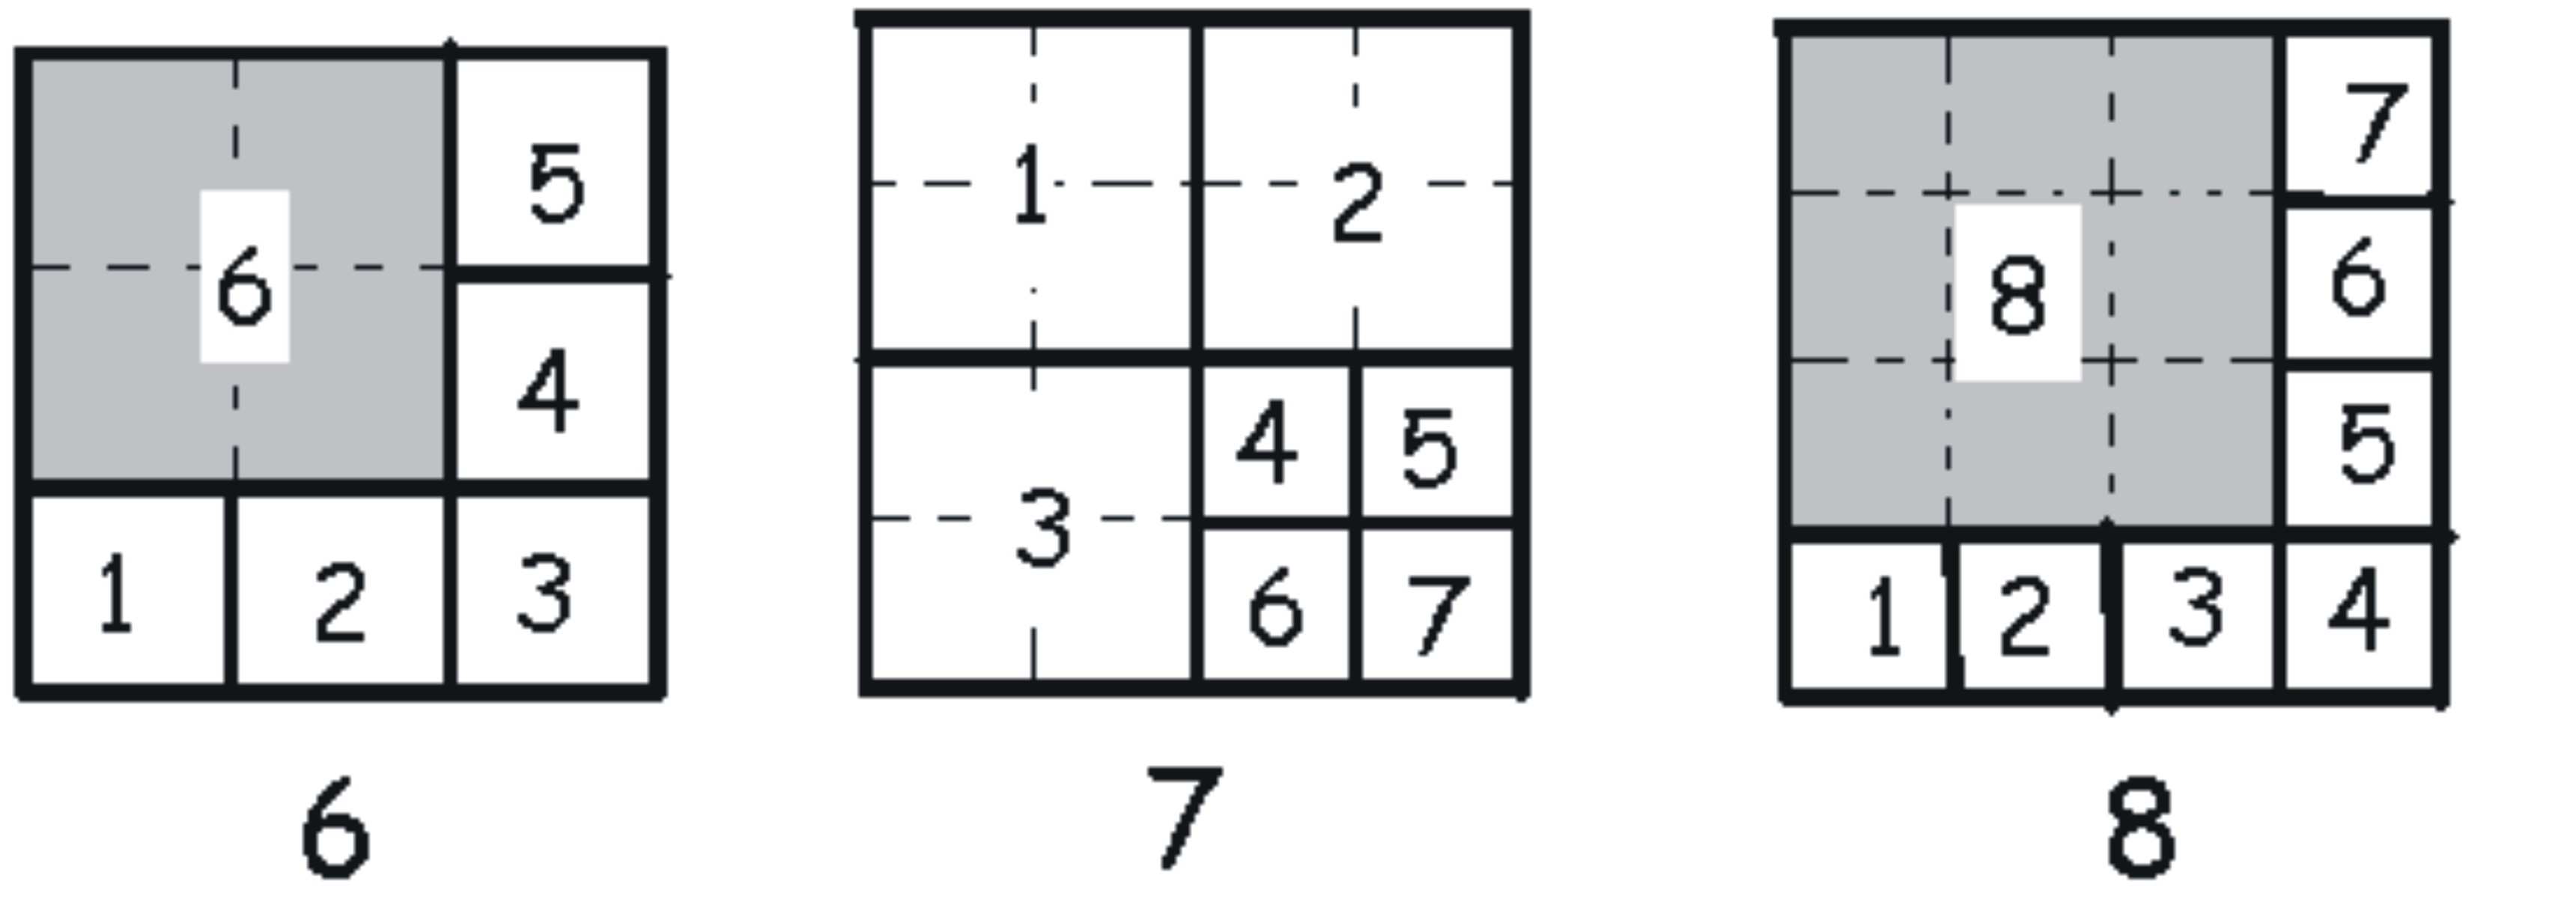 Így egy négyzetet a 6 darabról indulva feldarabolhatunk 6, 9, 12, 15, négyzetre. A 8 darabról indulva feldarabolhatjuk a négyzetet 8, 11, 14, 17, négyzetre. Összegezzünk!